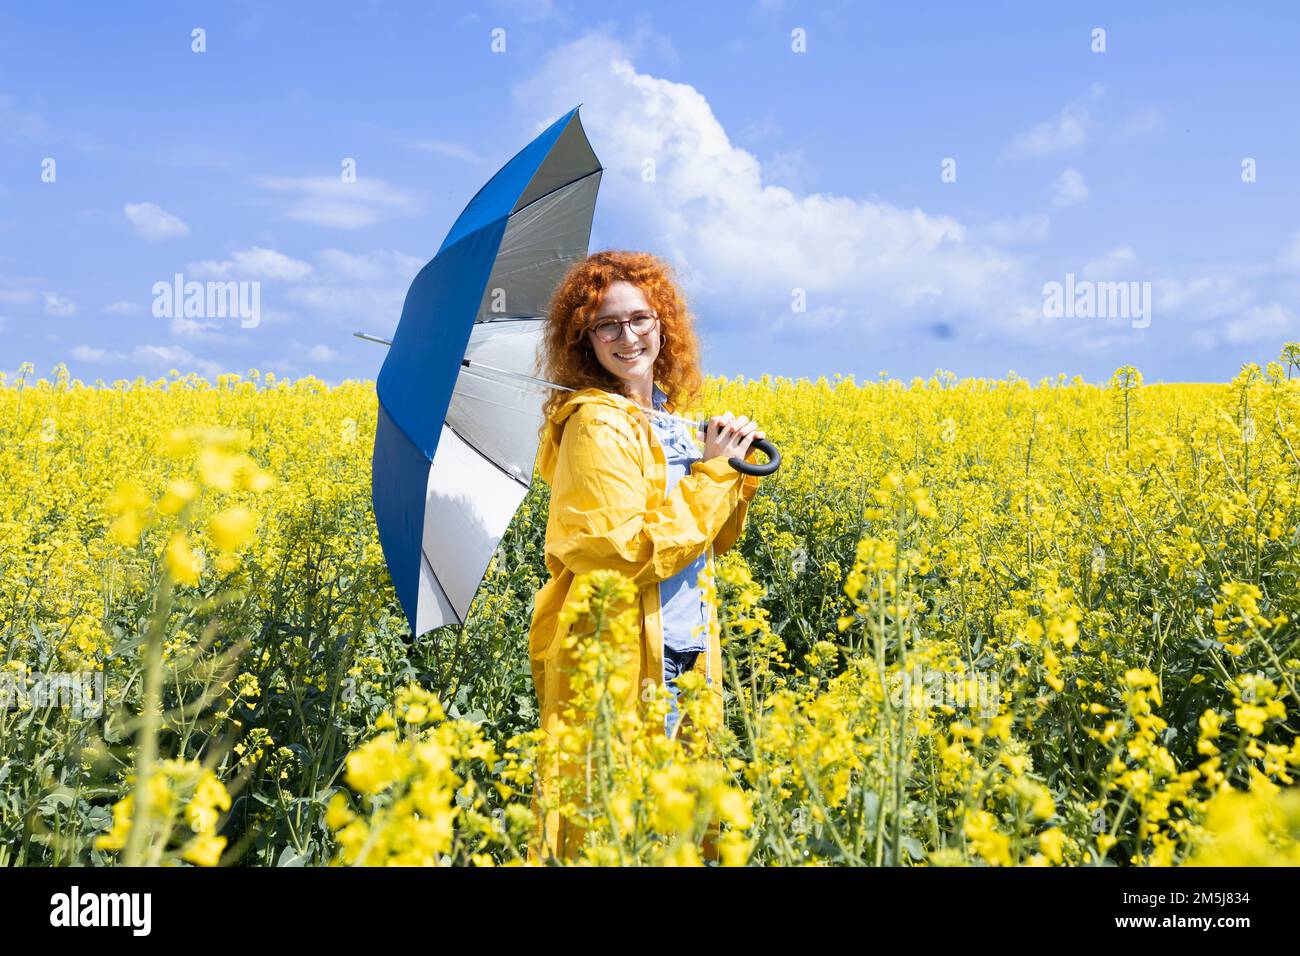 Giovane donna in posa con un ombrello blu in una calda giornata primaverile Foto Stock